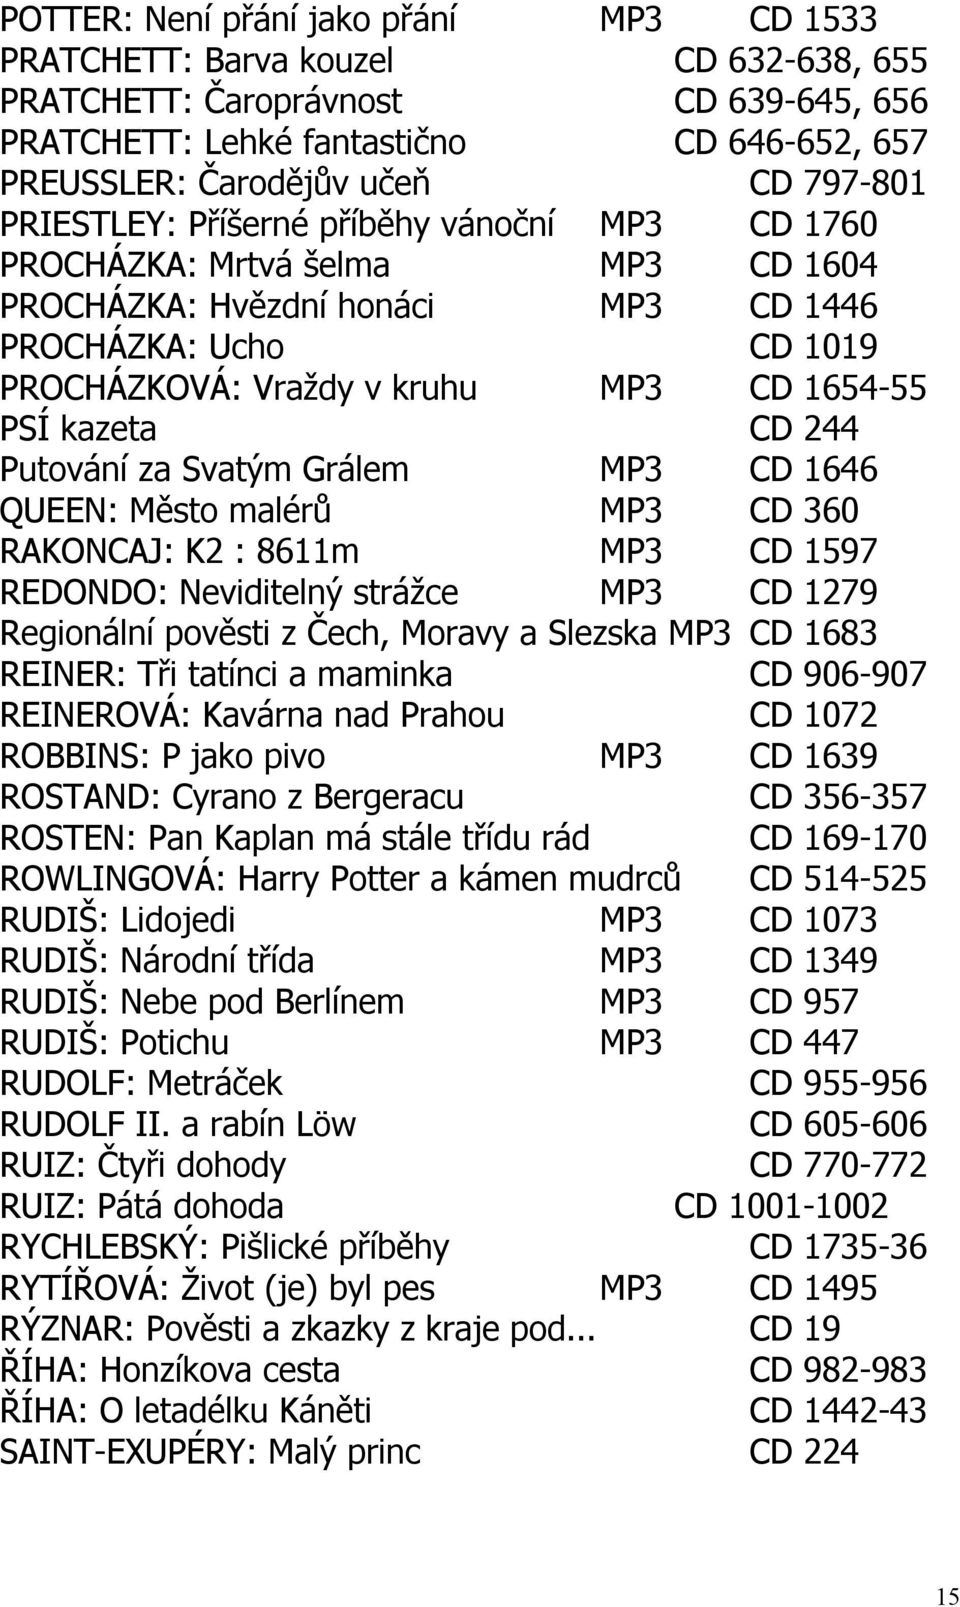 kazeta CD 244 Putování za Svatým Grálem MP3 CD 1646 QUEEN: Město malérů MP3 CD 360 RAKONCAJ: K2 : 8611m MP3 CD 1597 REDONDO: Neviditelný strážce MP3 CD 1279 Regionální pověsti z Čech, Moravy a